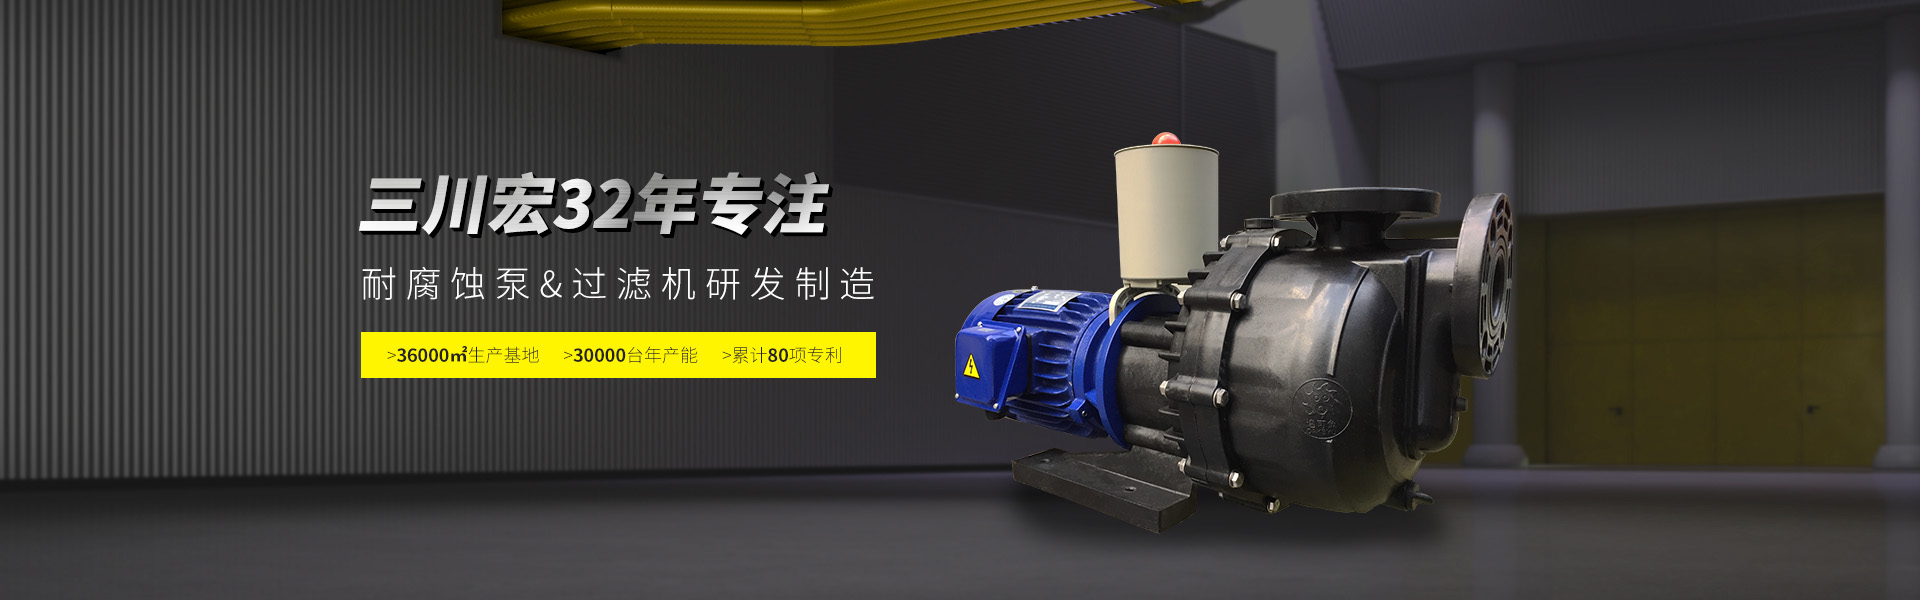 三川宏专注塑料离心泵&电镀过滤机研发制造32年